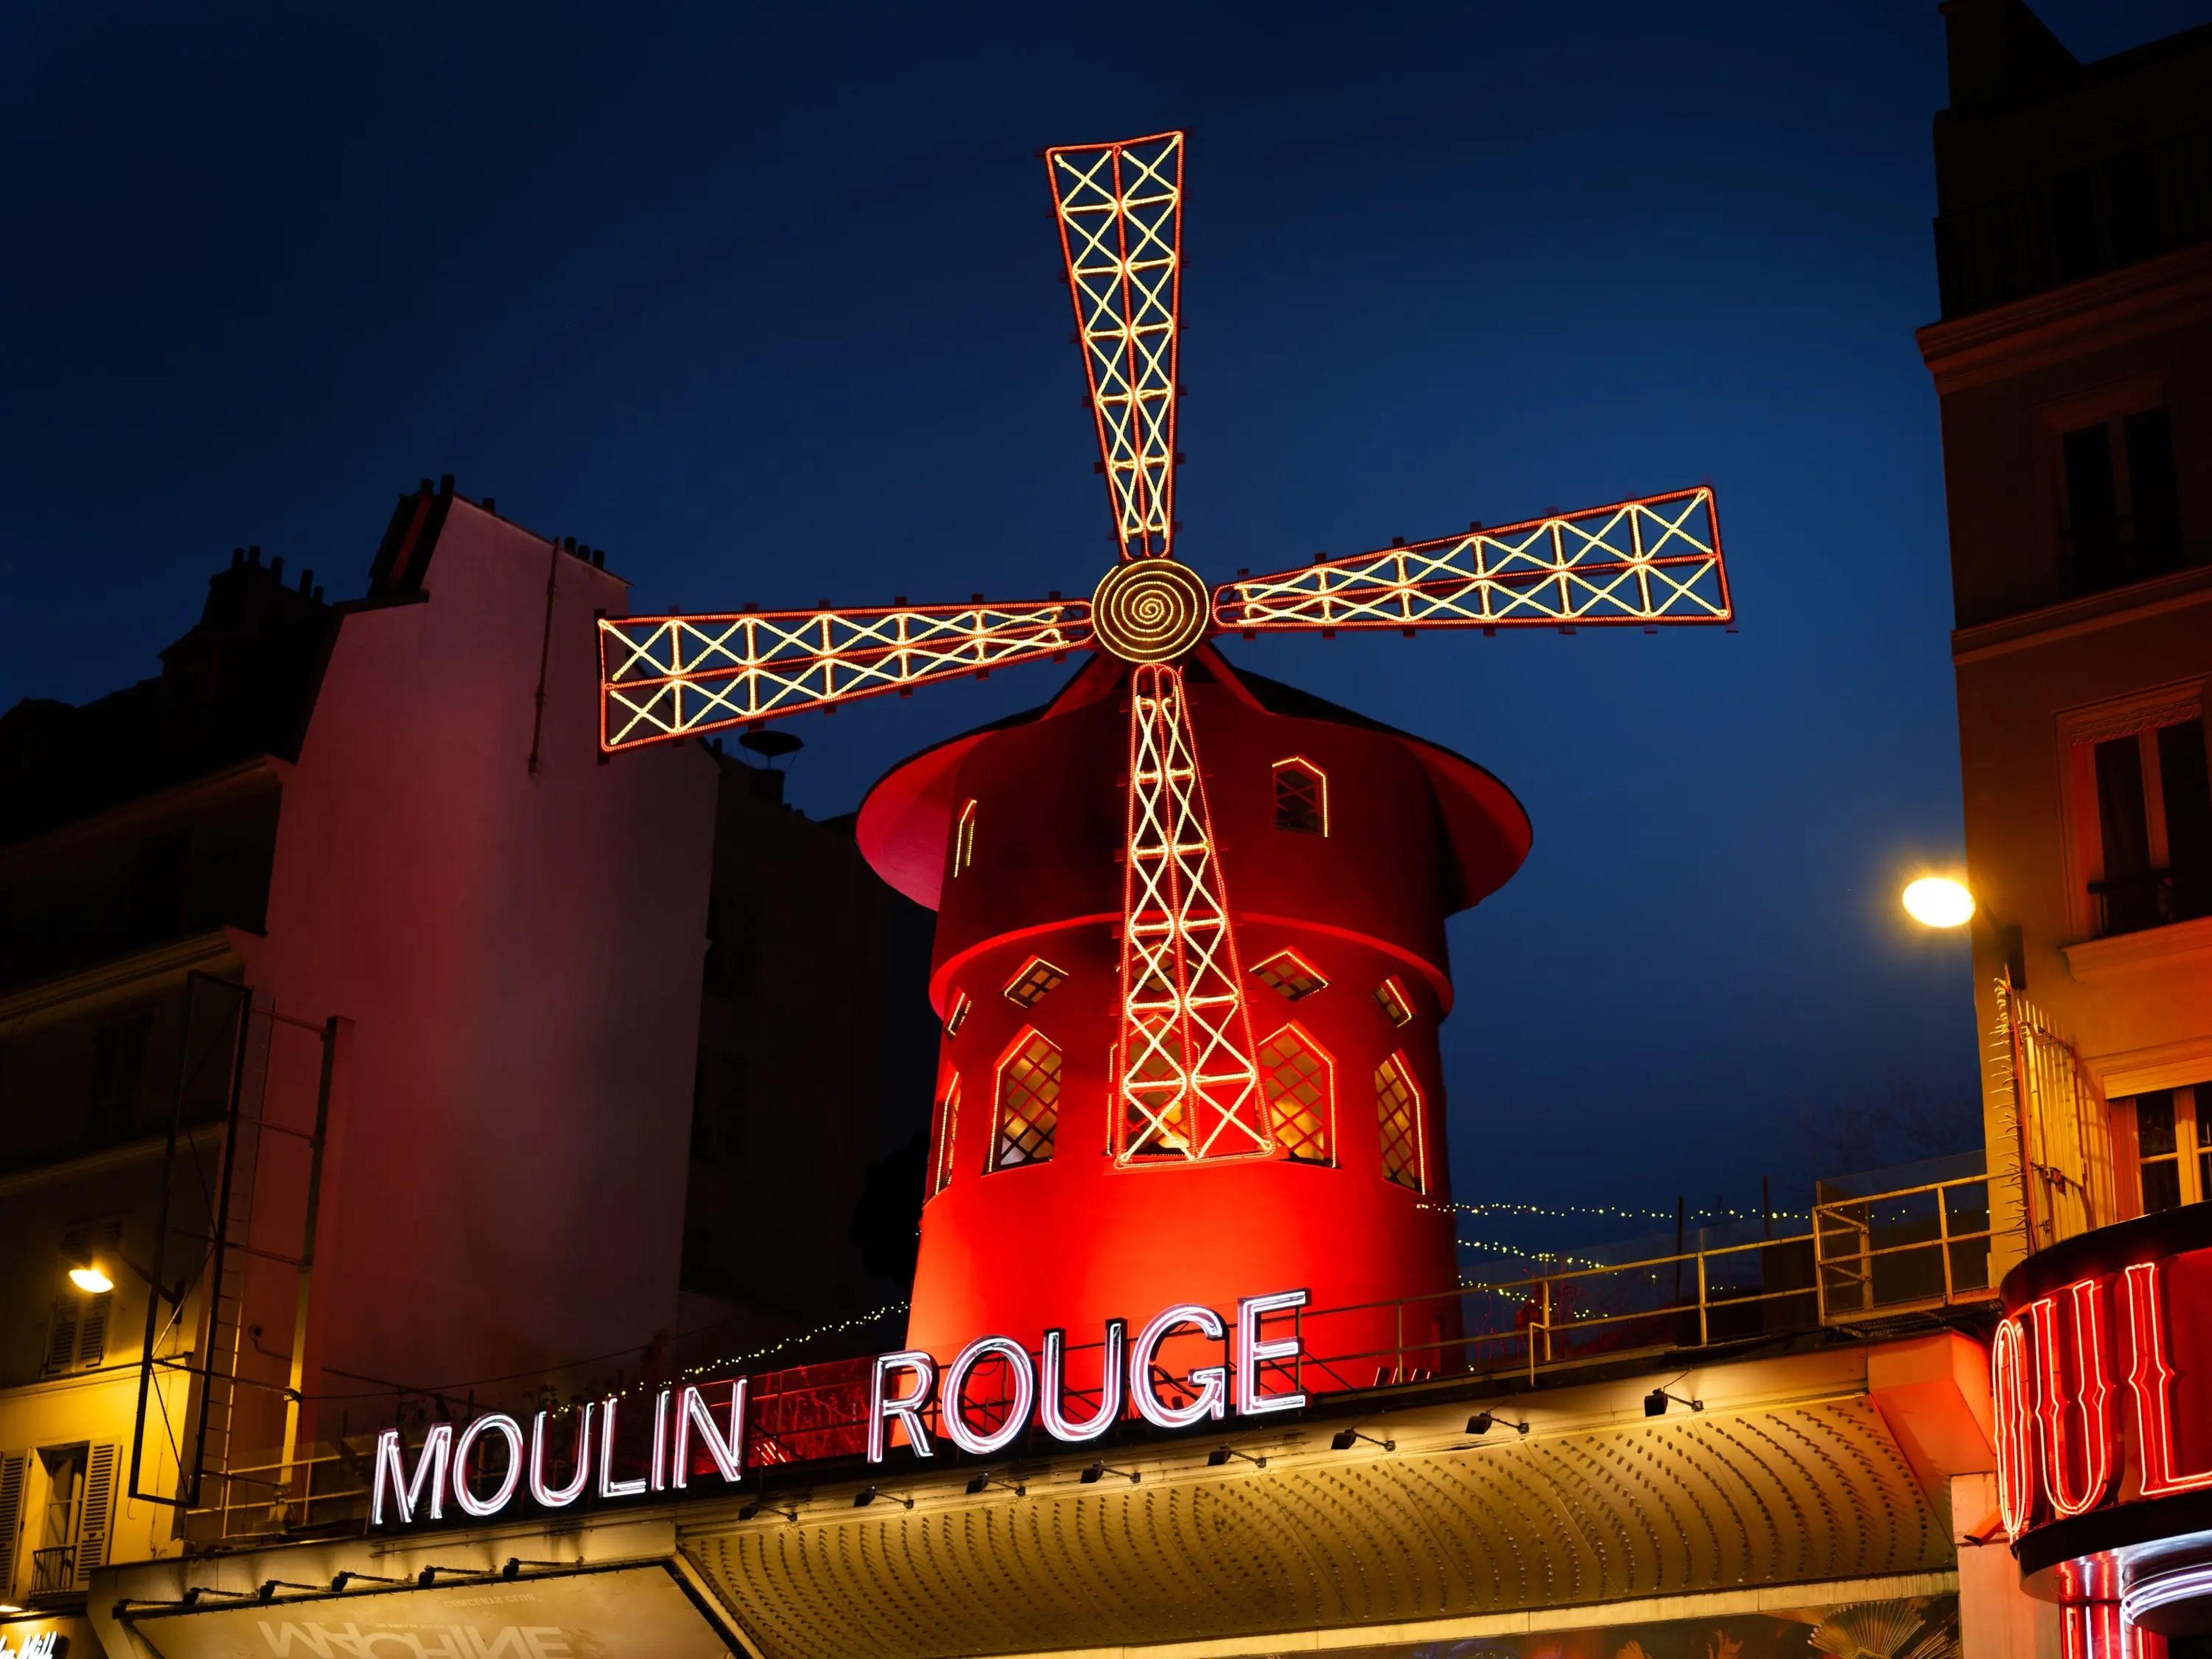 El icónico molino de viento del Moulin Rouge.